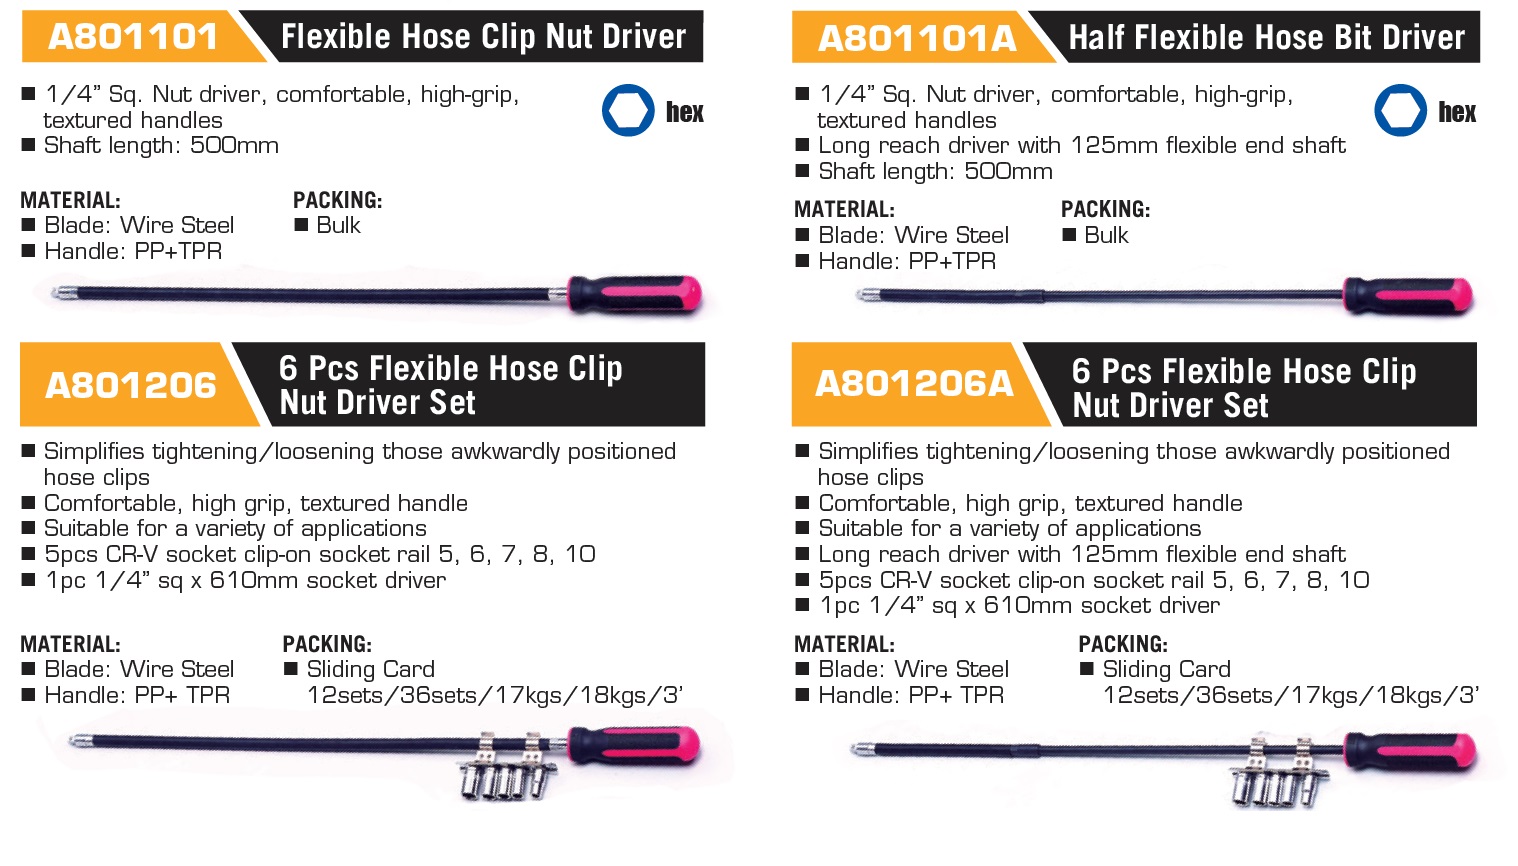 A801101 Flexible Hose Clip Nut Driver